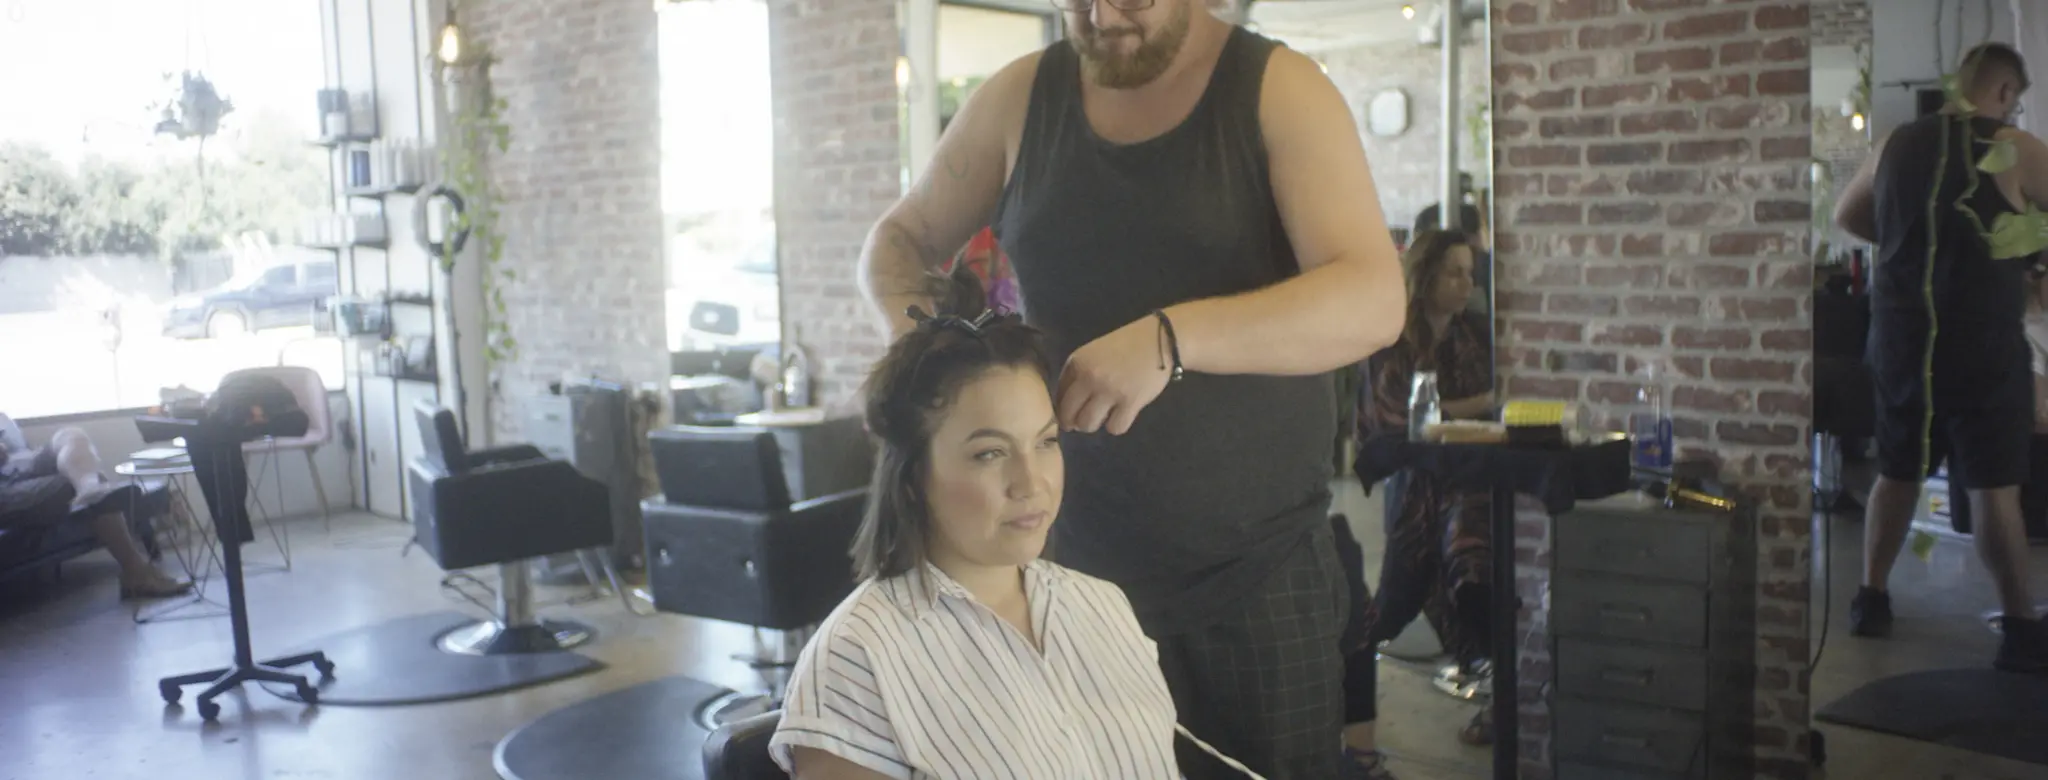 man cutting female client hair in salon